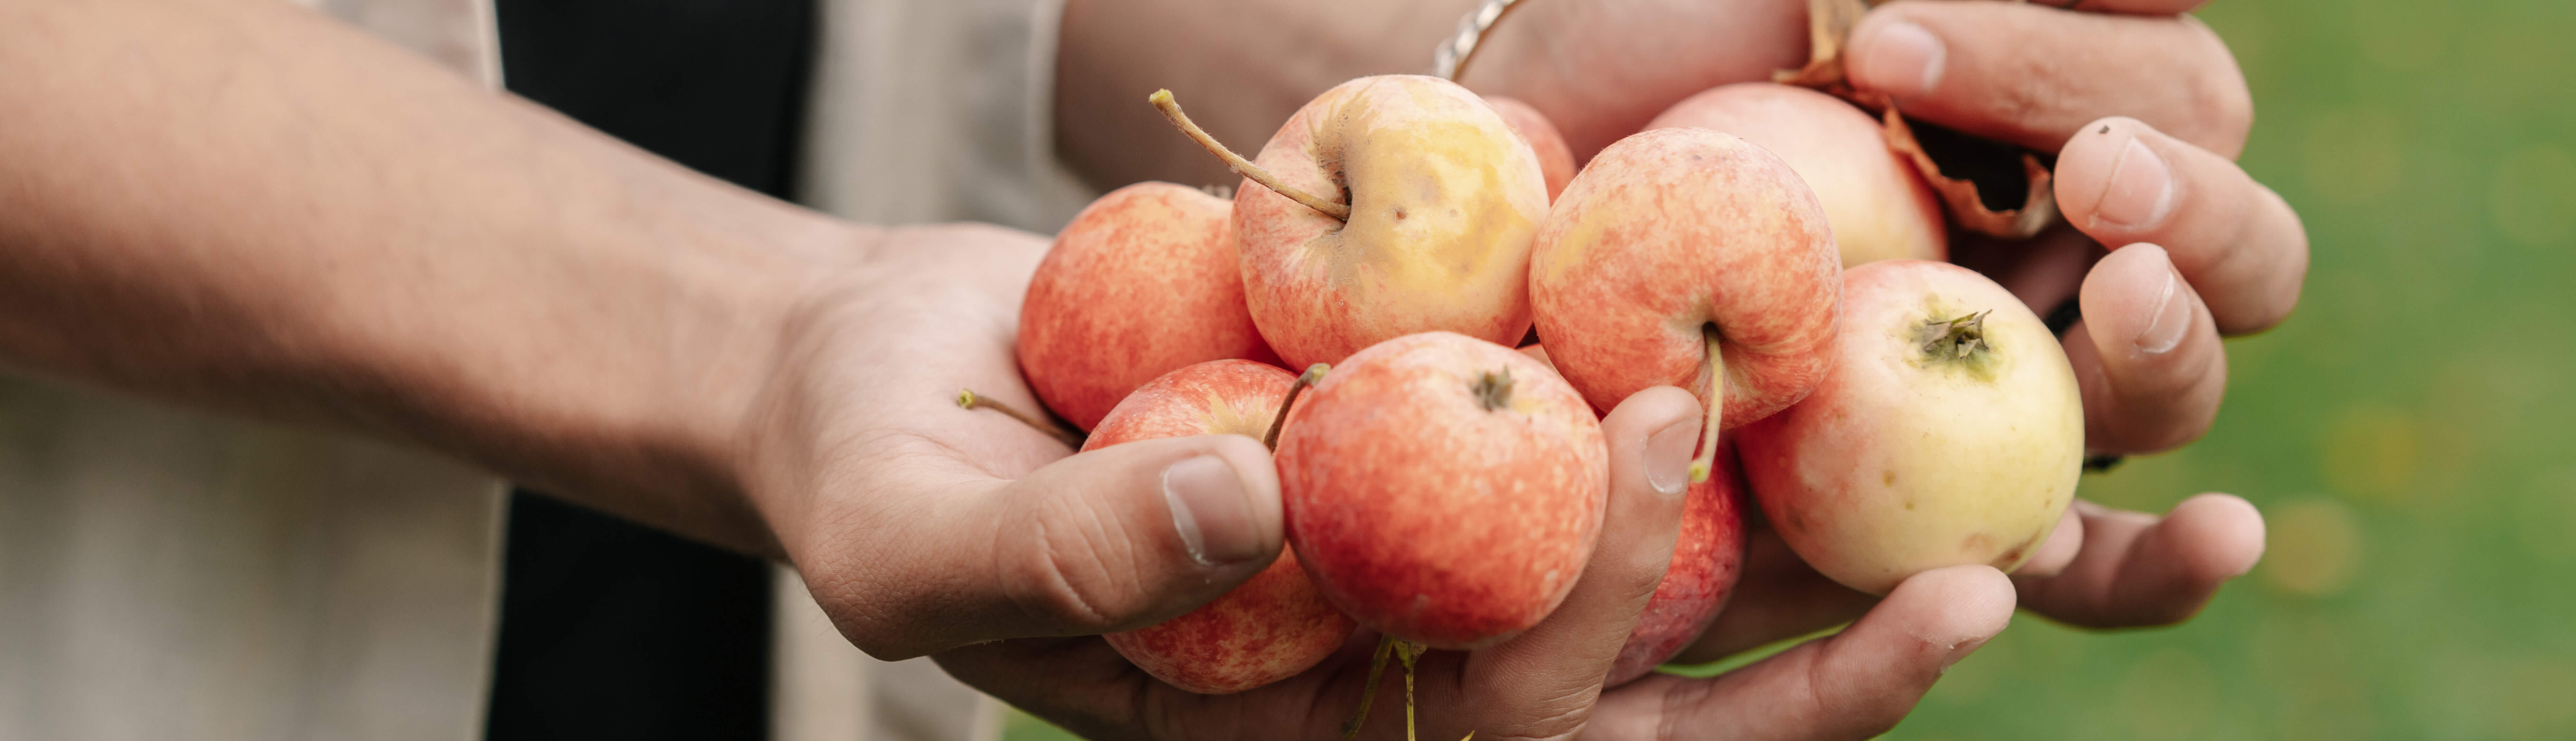 Zwei Hände halten viele Äpfel ins Bild.